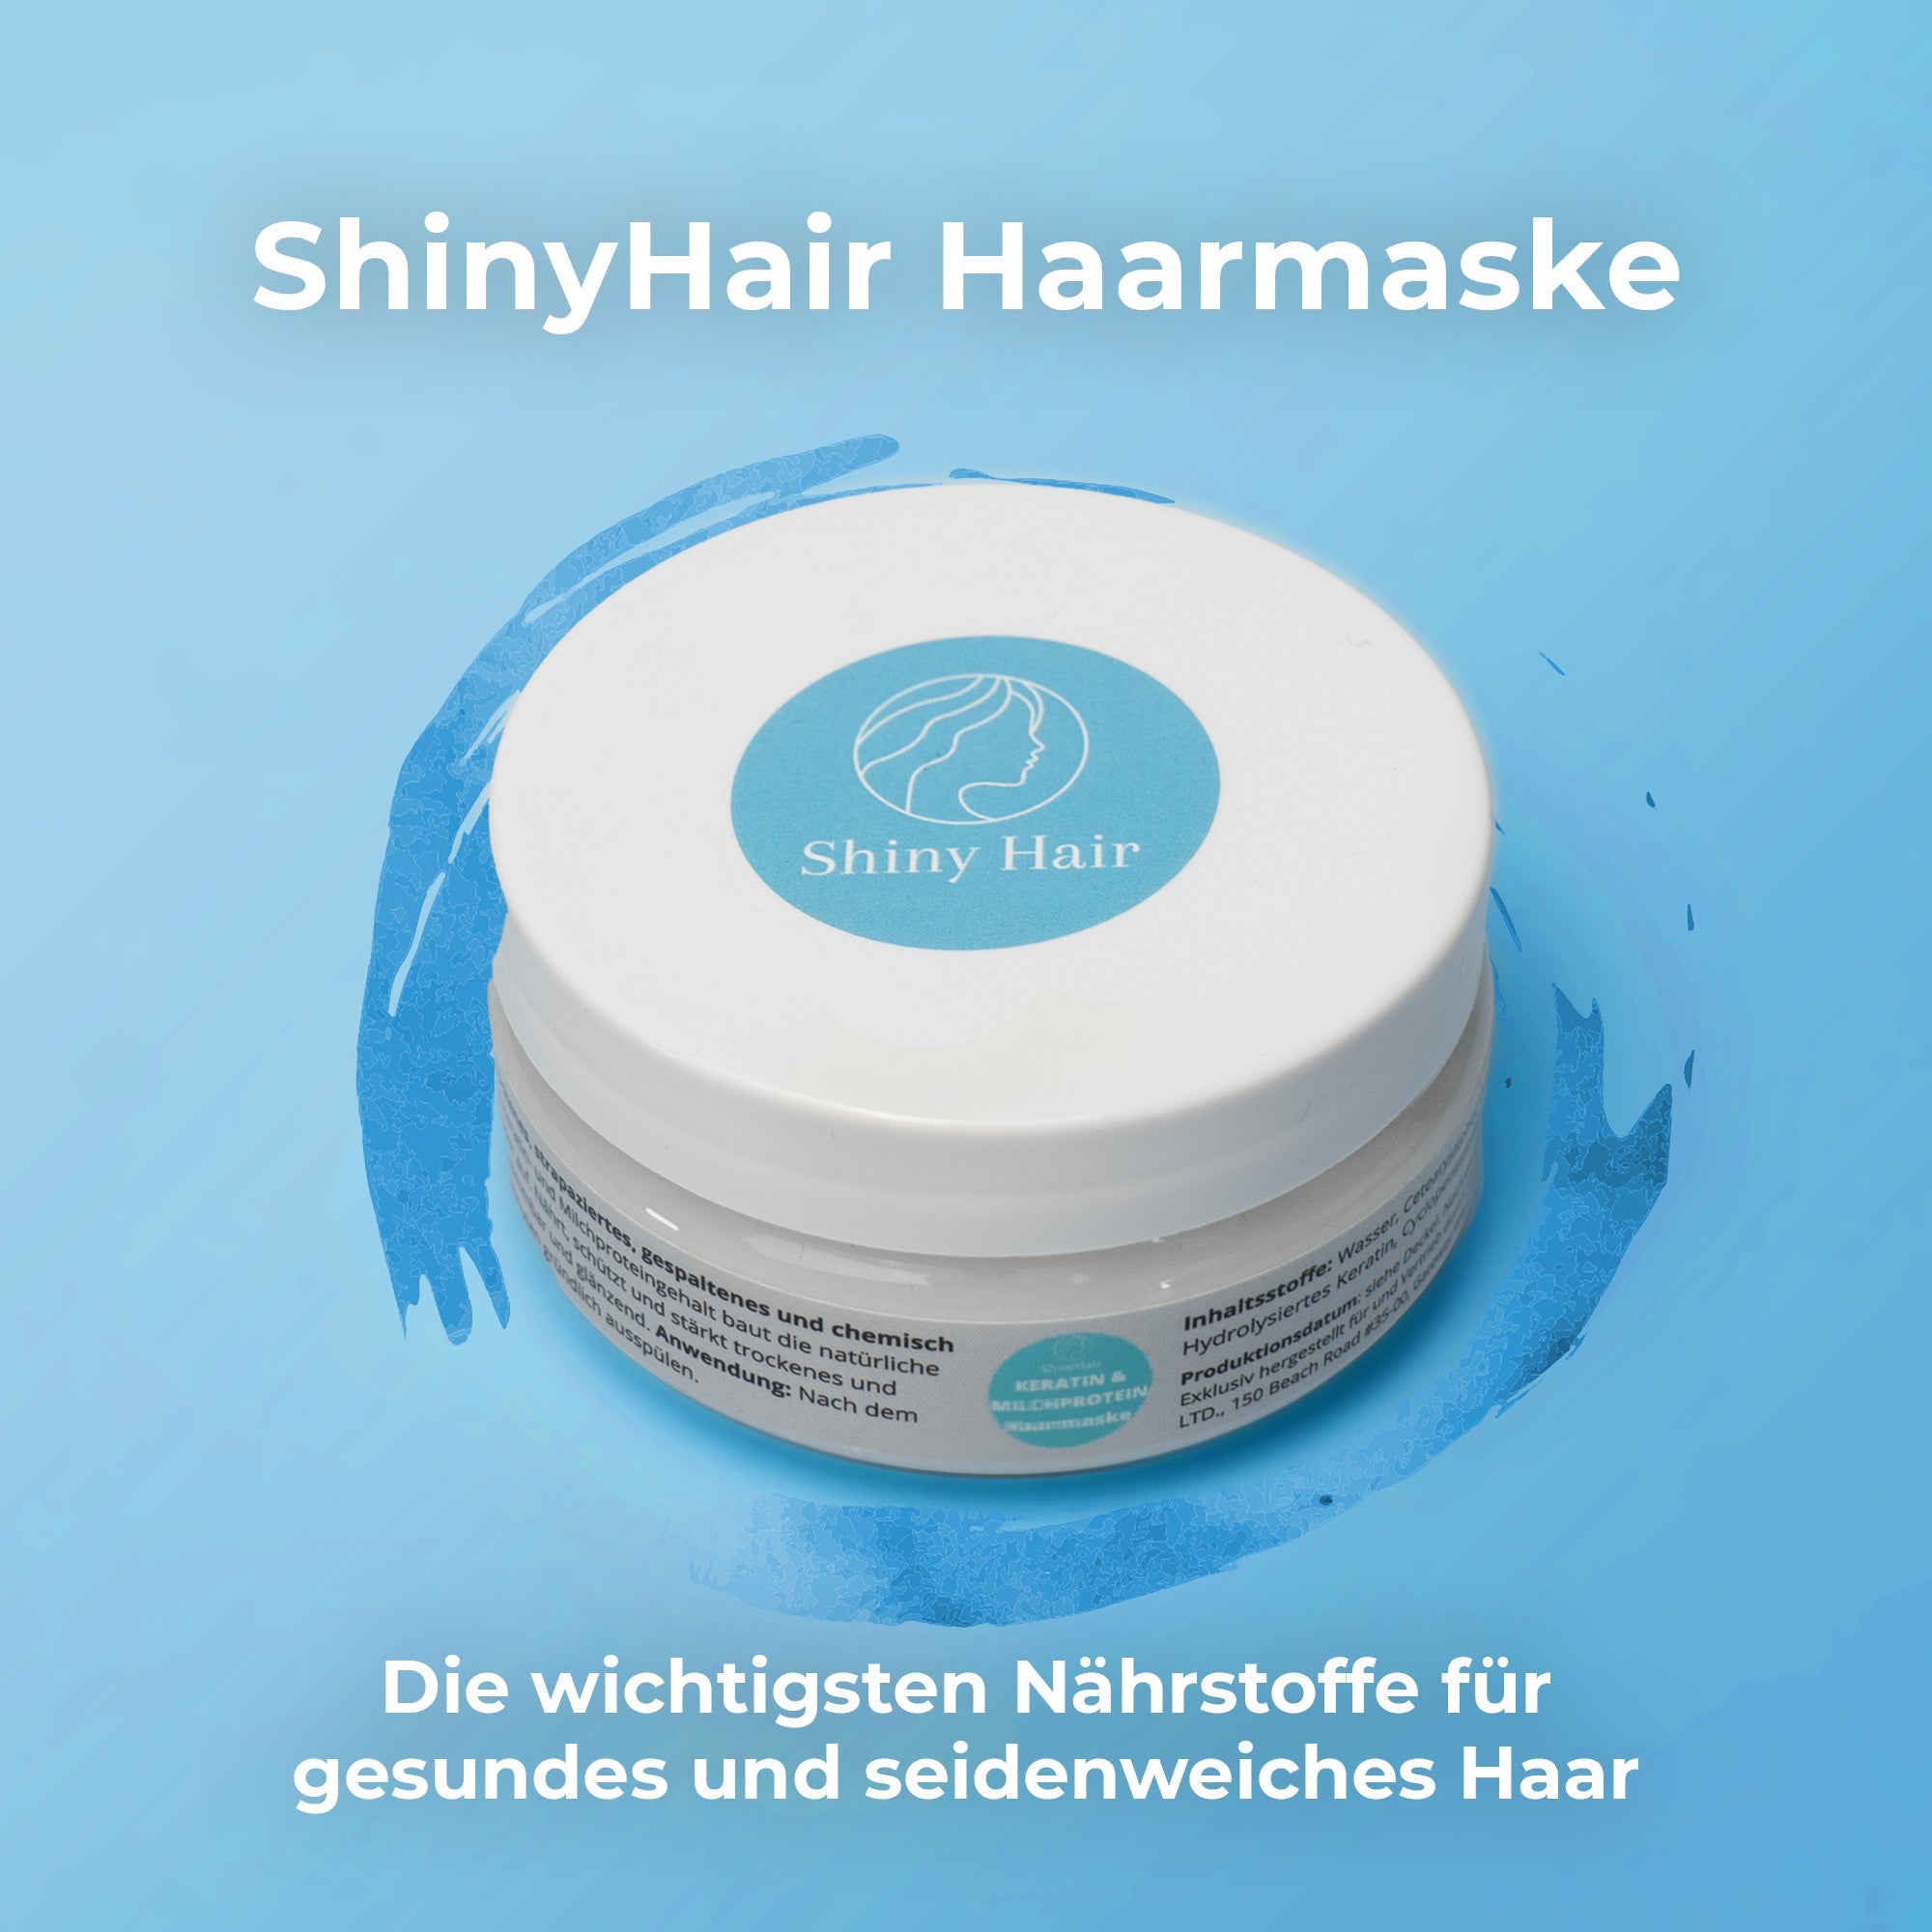 ShinyHair Haarmaske | Das Original - gesunde, glänzende Haare mit einer Anwendung